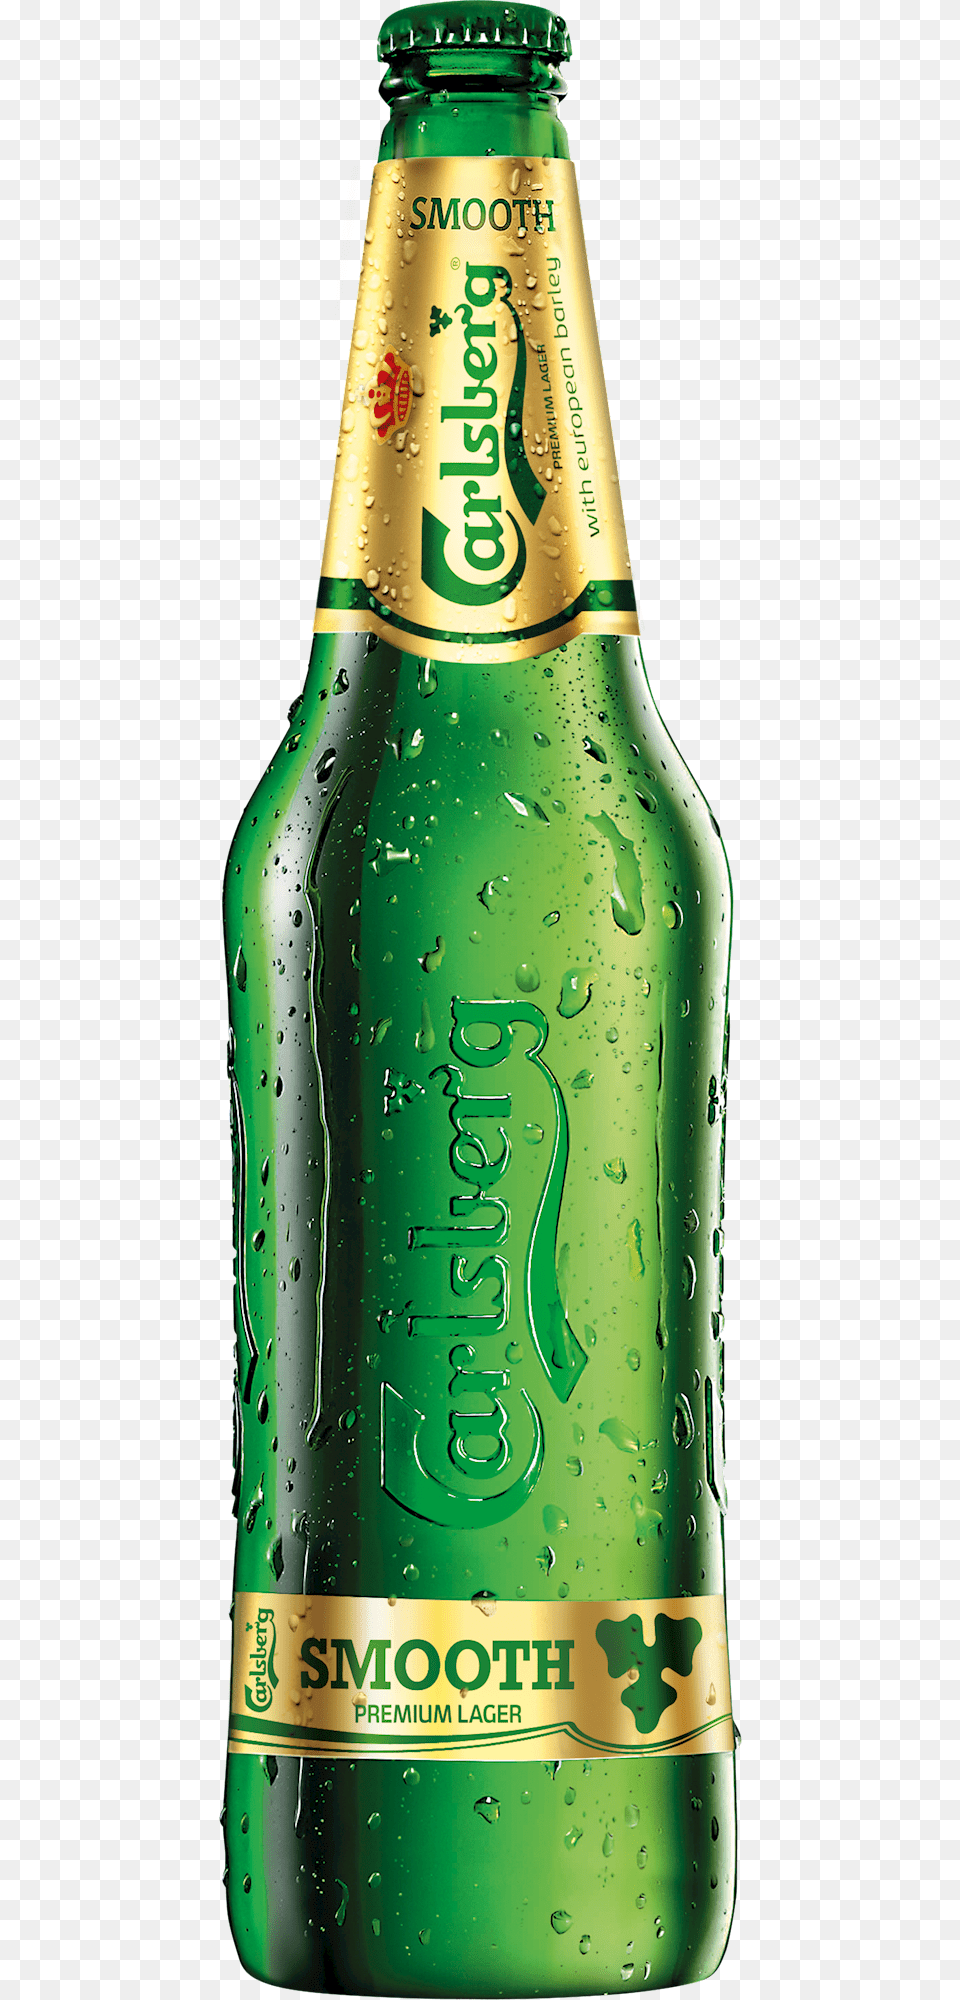 Carlsberg Smooth Carlsberg Elephant Strong Beer, Alcohol, Beer Bottle, Beverage, Bottle Png Image